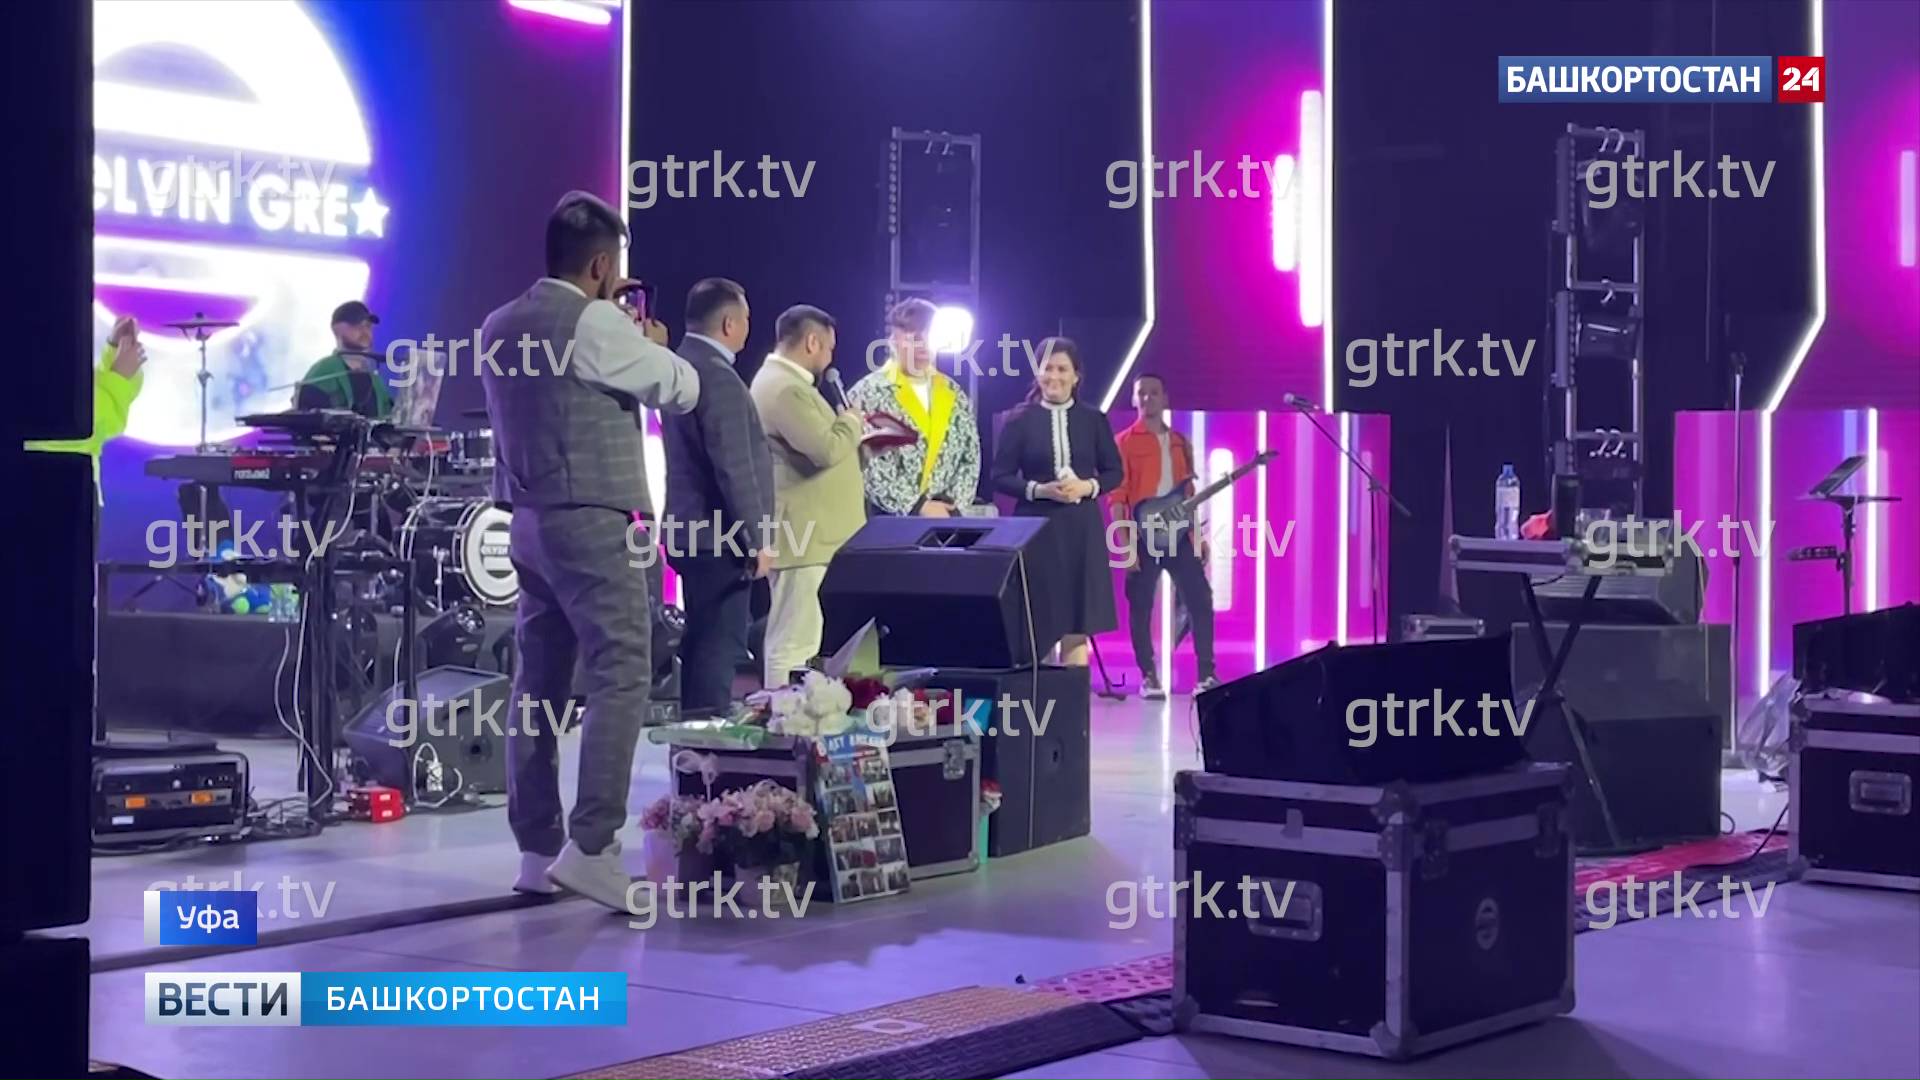 Певцу Элвину Грею присвоили звание Народного артиста Республики Башкортостан